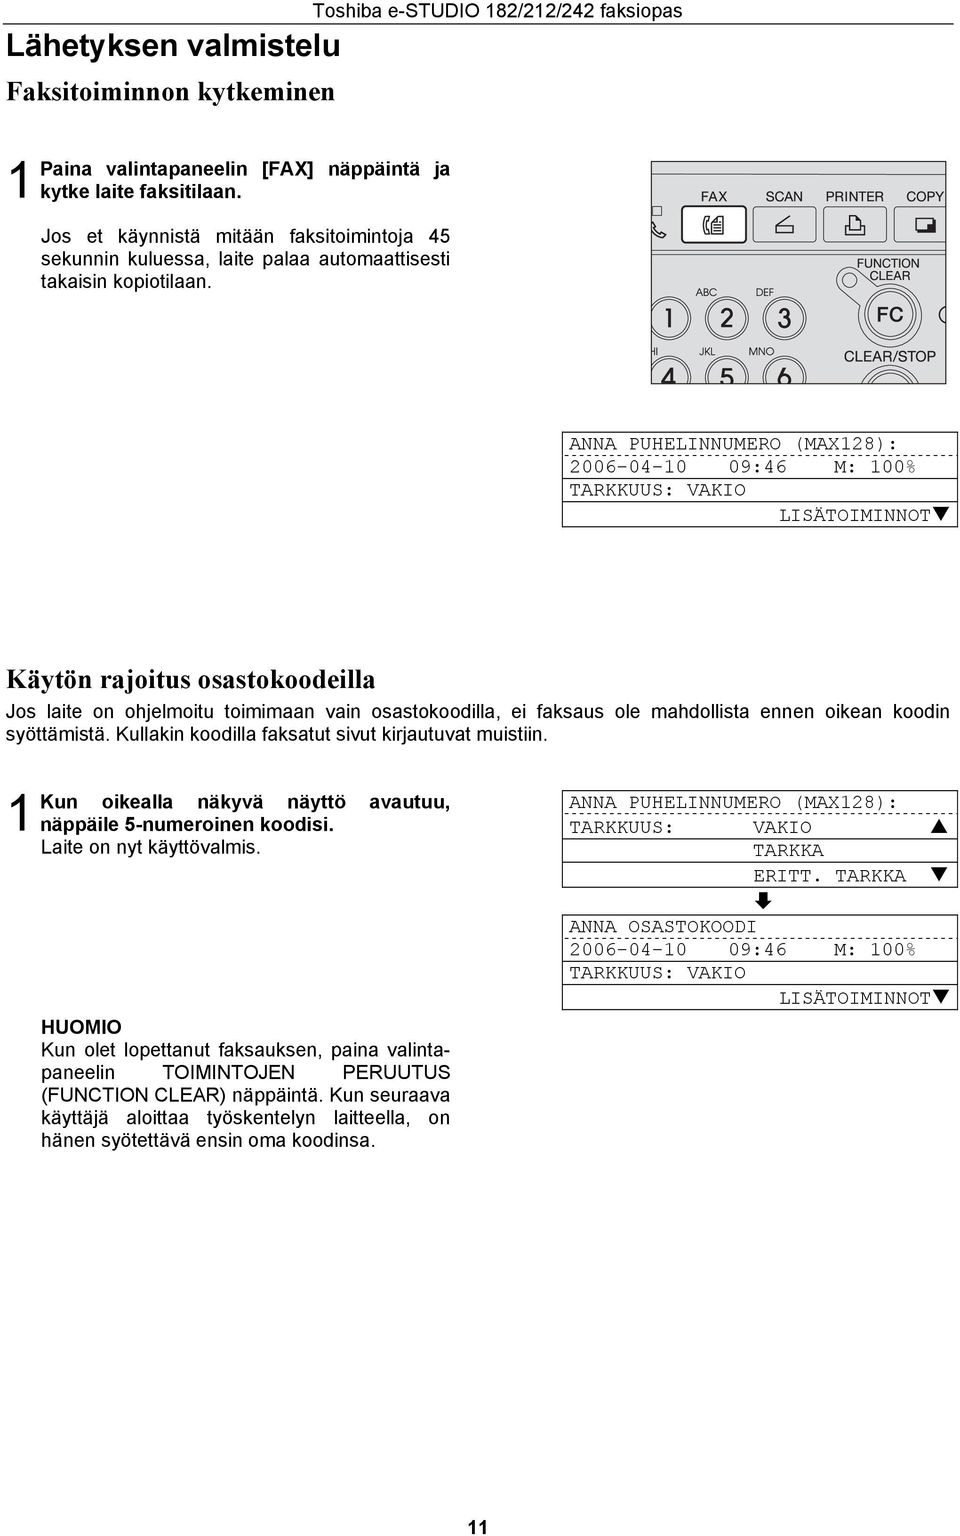 Toshiba e-studio 8//4 faksiopas ANNA PUHELINNUMERO (MAX8): 006-04-0 09:46 M: 00% TARKKUUS: VAKIO LISÄTOIMINNOT Käytön rajoitus osastokoodeilla Jos laite on ohjelmoitu toimimaan vain osastokoodilla,